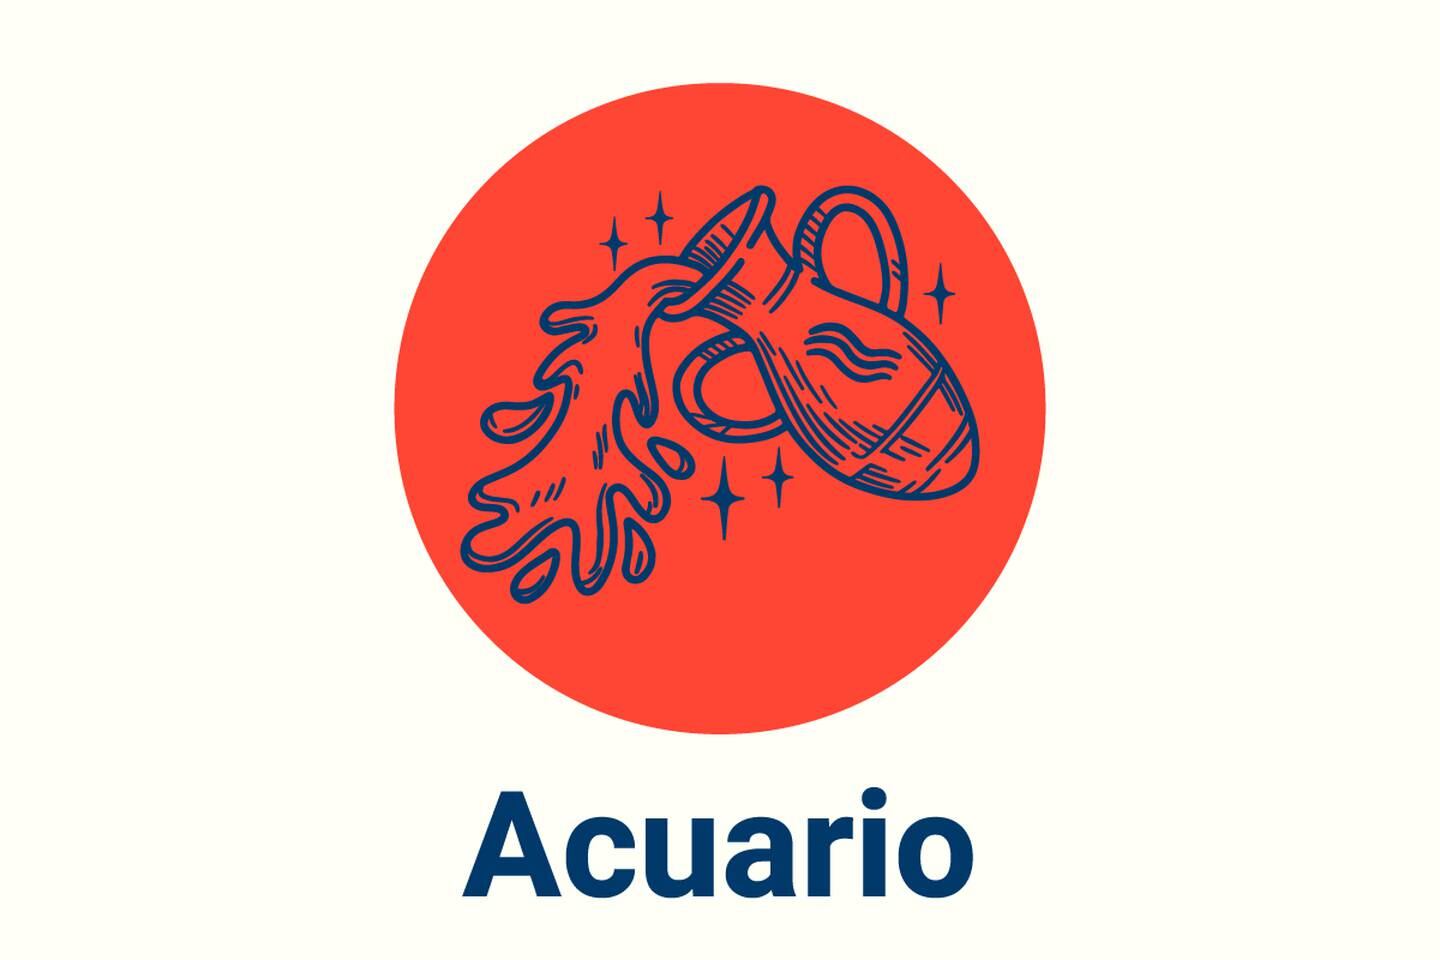 Imagen con el símbolo del signo zodiacal Acuario